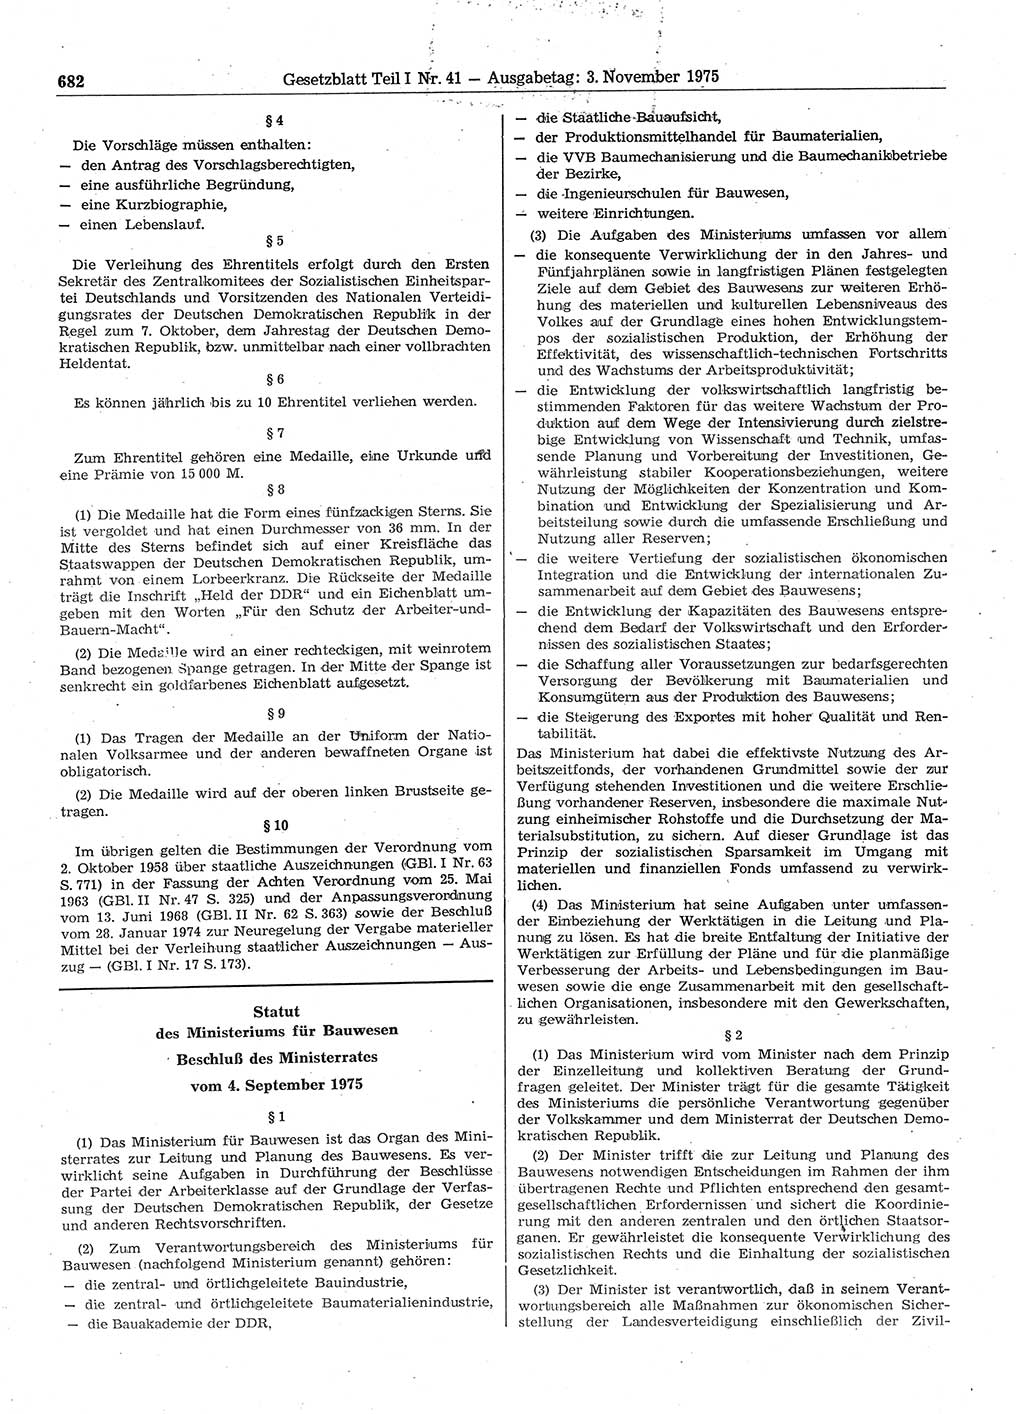 Gesetzblatt (GBl.) der Deutschen Demokratischen Republik (DDR) Teil Ⅰ 1975, Seite 682 (GBl. DDR Ⅰ 1975, S. 682)